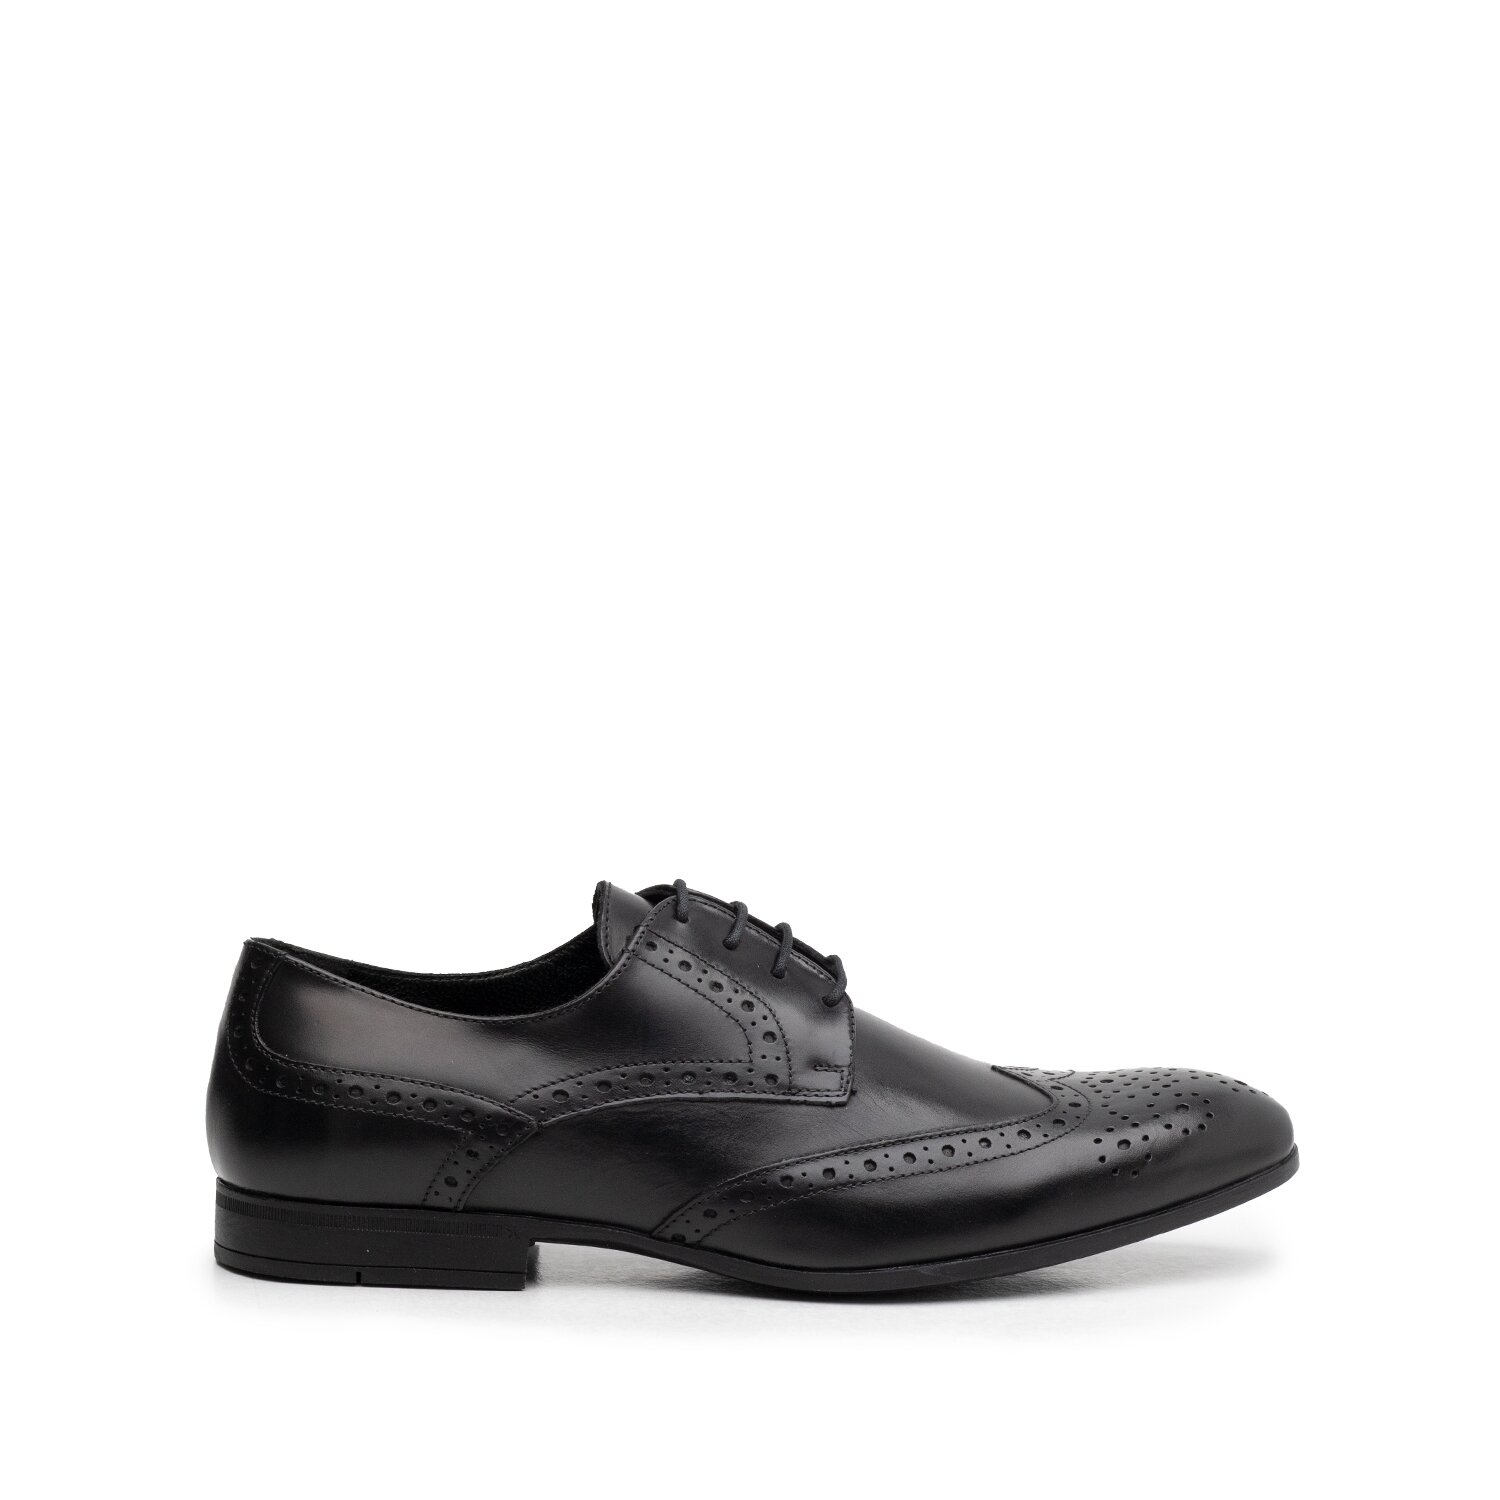 Pantofi eleganți bărbați din piele naturală, Leofex - 538-2 Negru Box